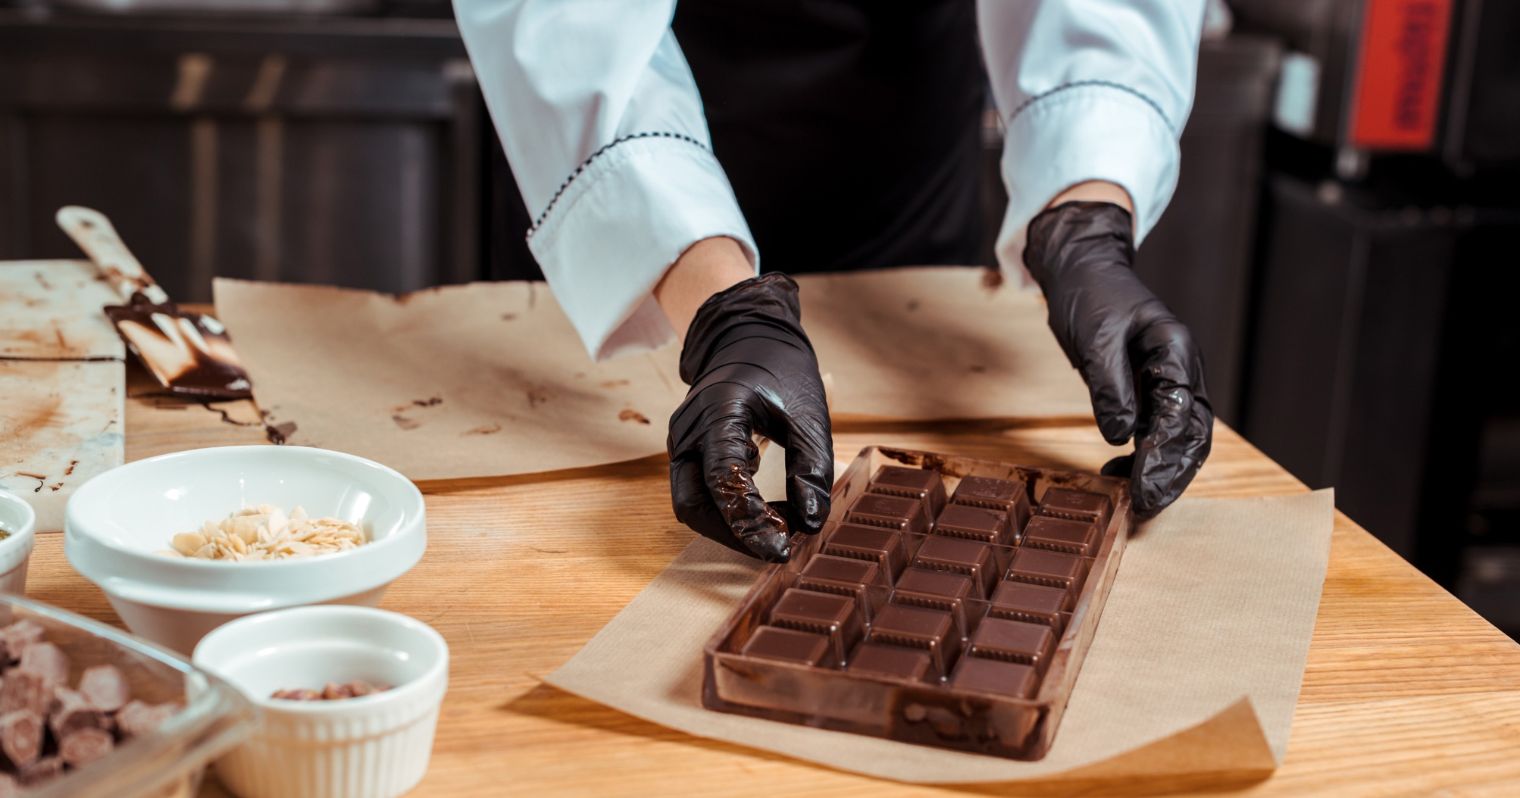 A képen a csokoládékockákat formázó édességkészítő keze látható.